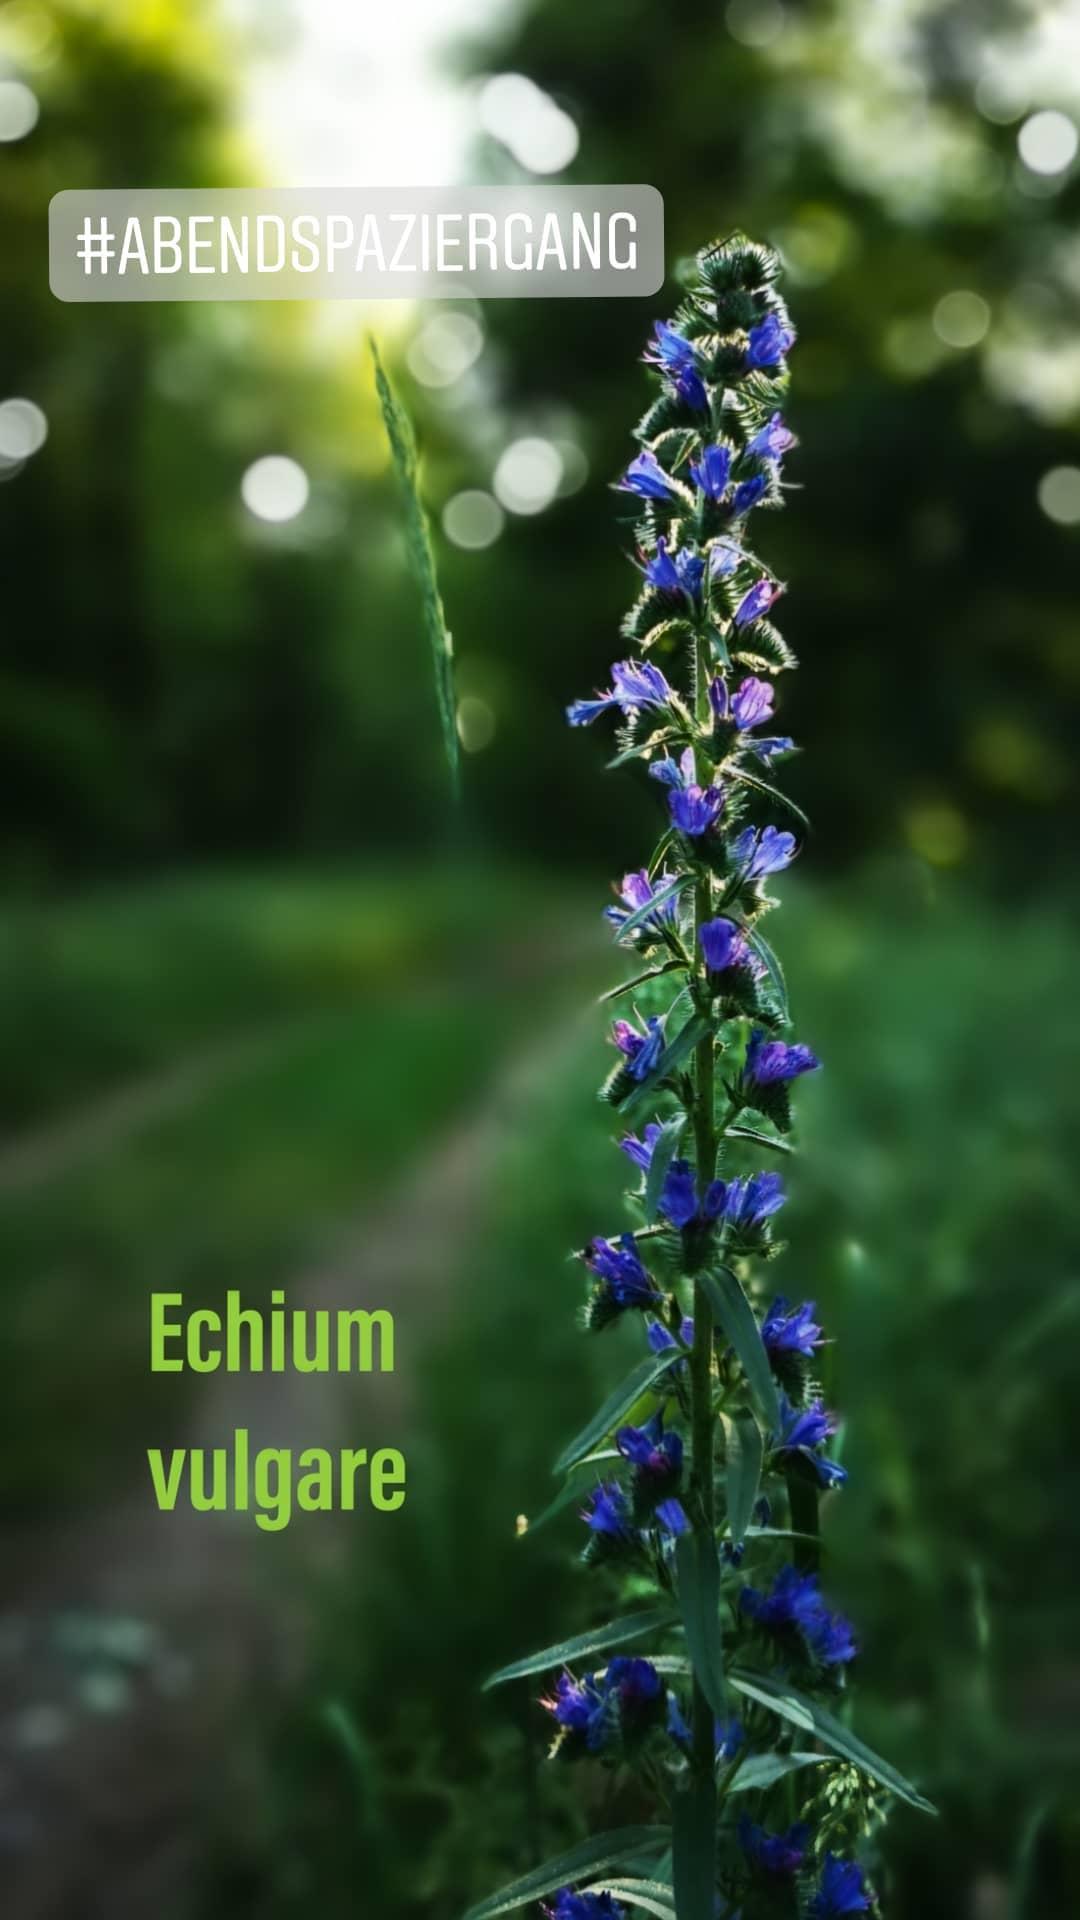 Echium vulgare